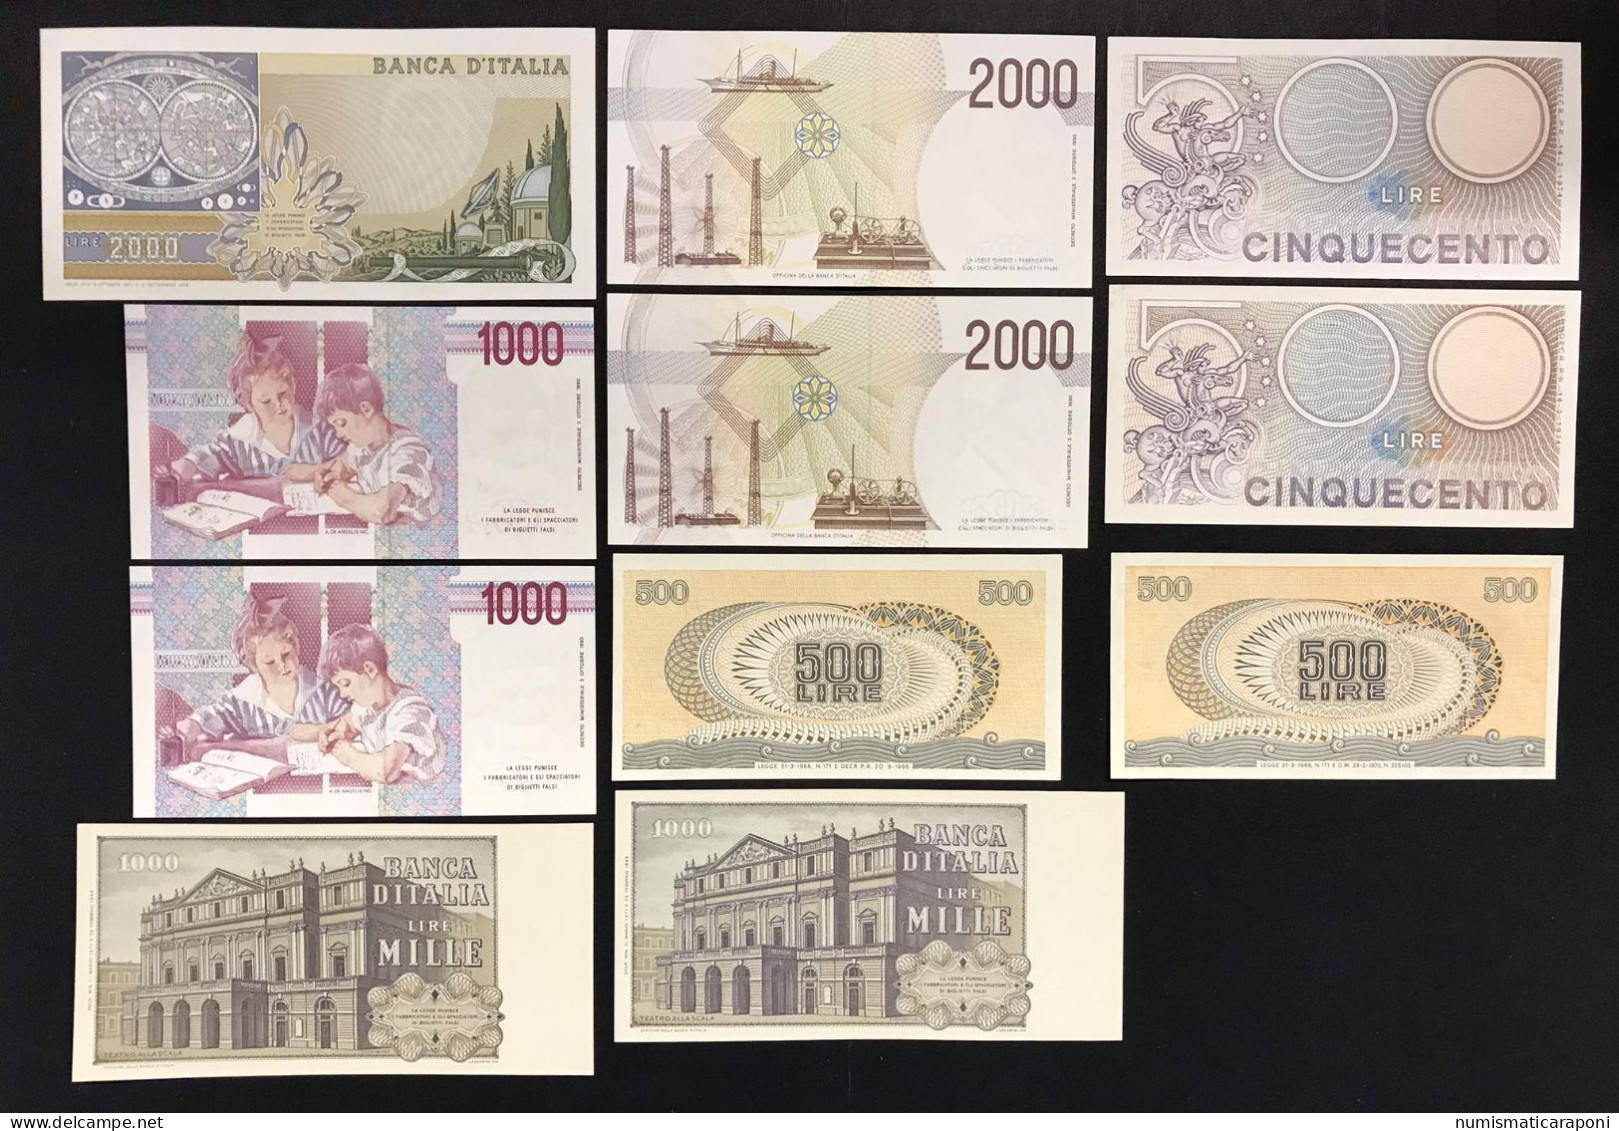 Italy Italia Regno/repubblica 19 Banconote 19 Notes Bb/q.fds Lotto.3423 - [ 9] Colecciones